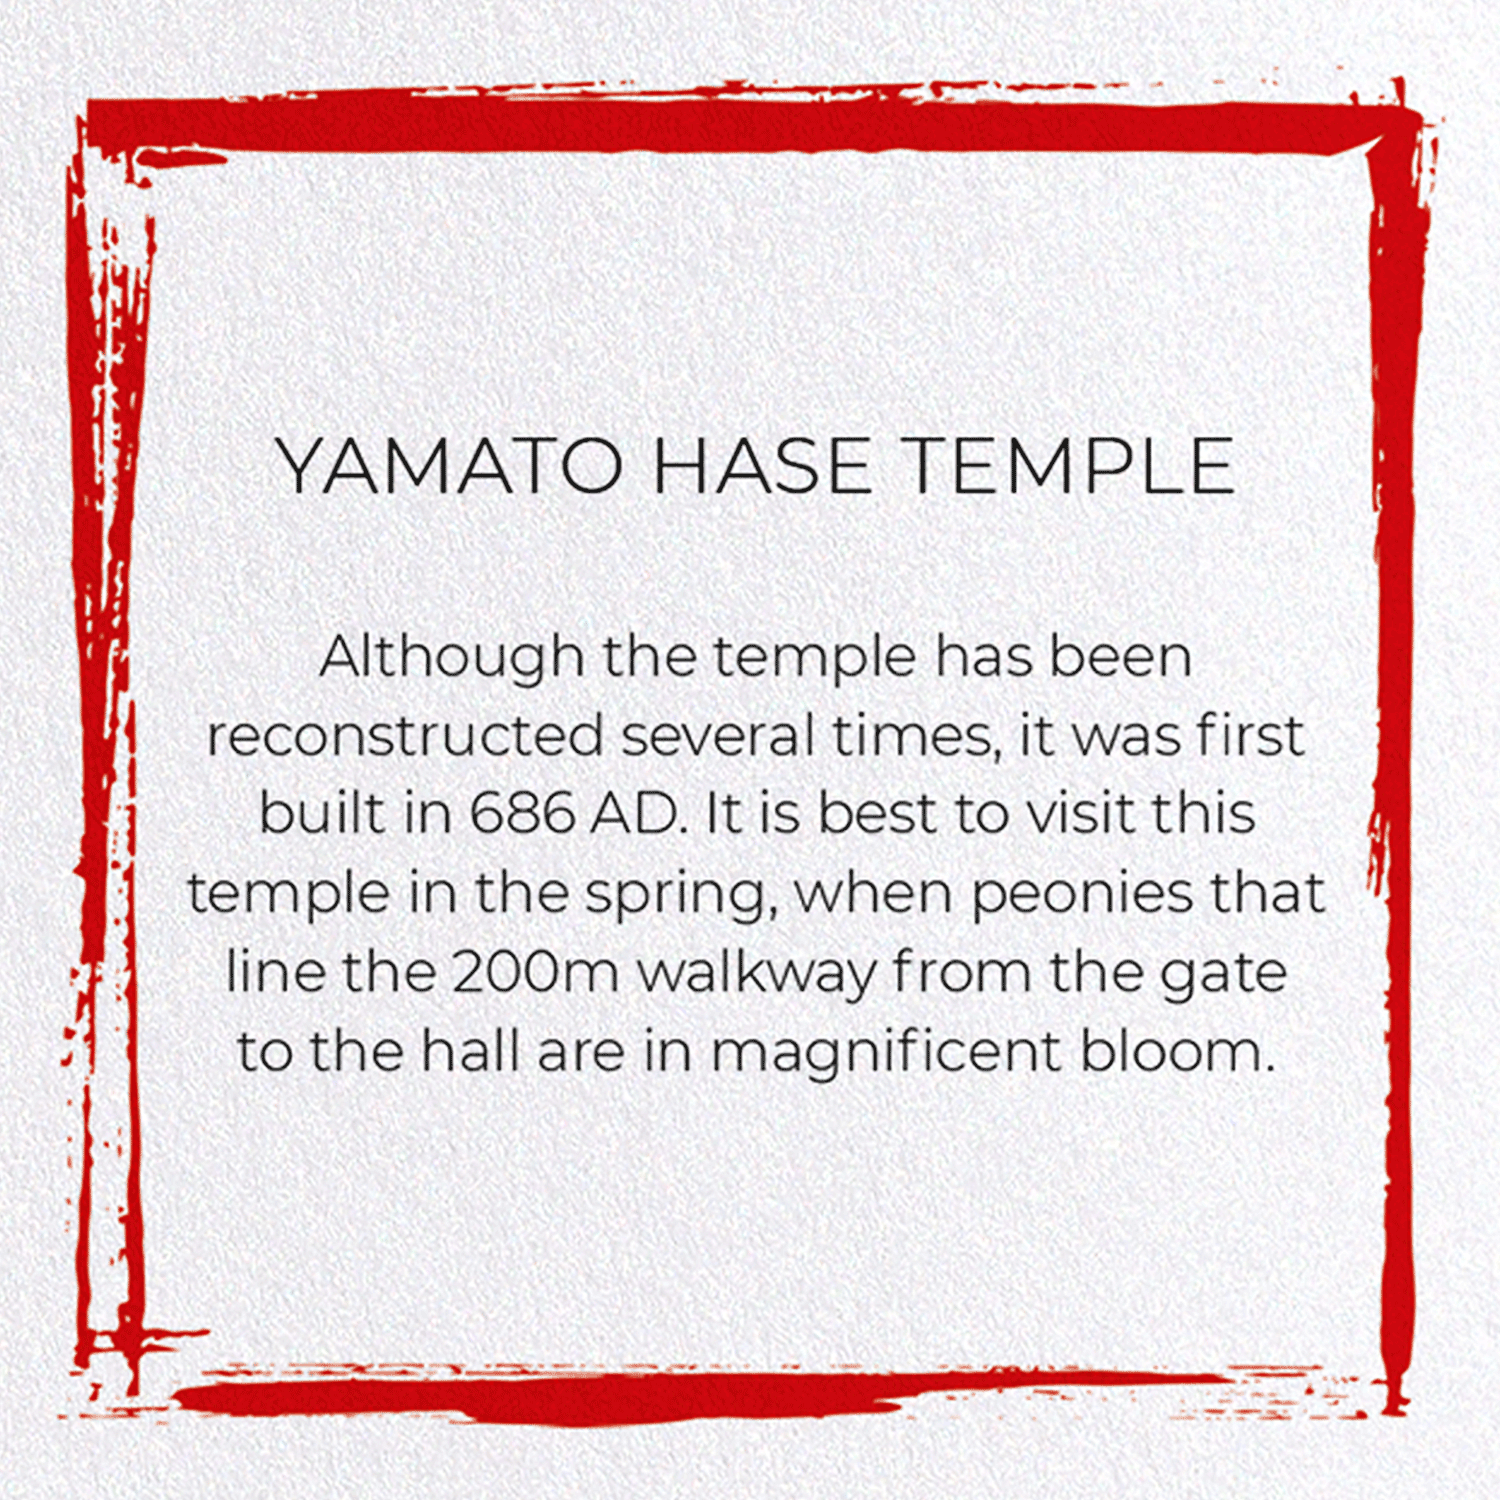 YAMATO HASE TEMPLE: Japanese Greeting Card